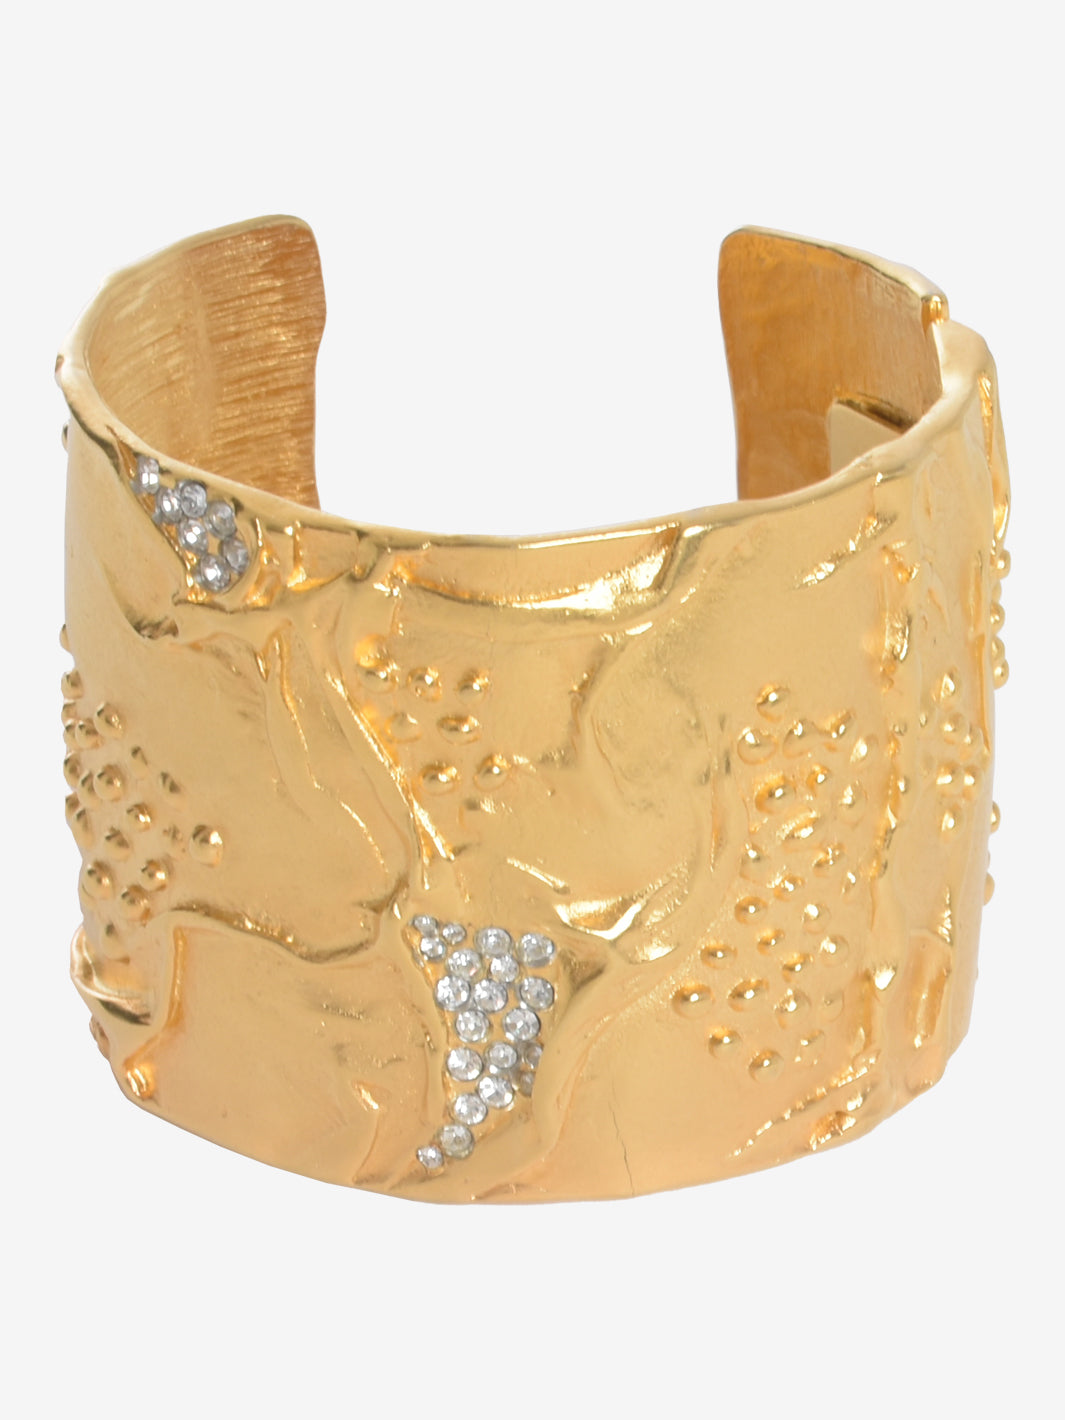 Kenneth Jay Lane Gold Large Rigid Band Bracelet With Rhinestones